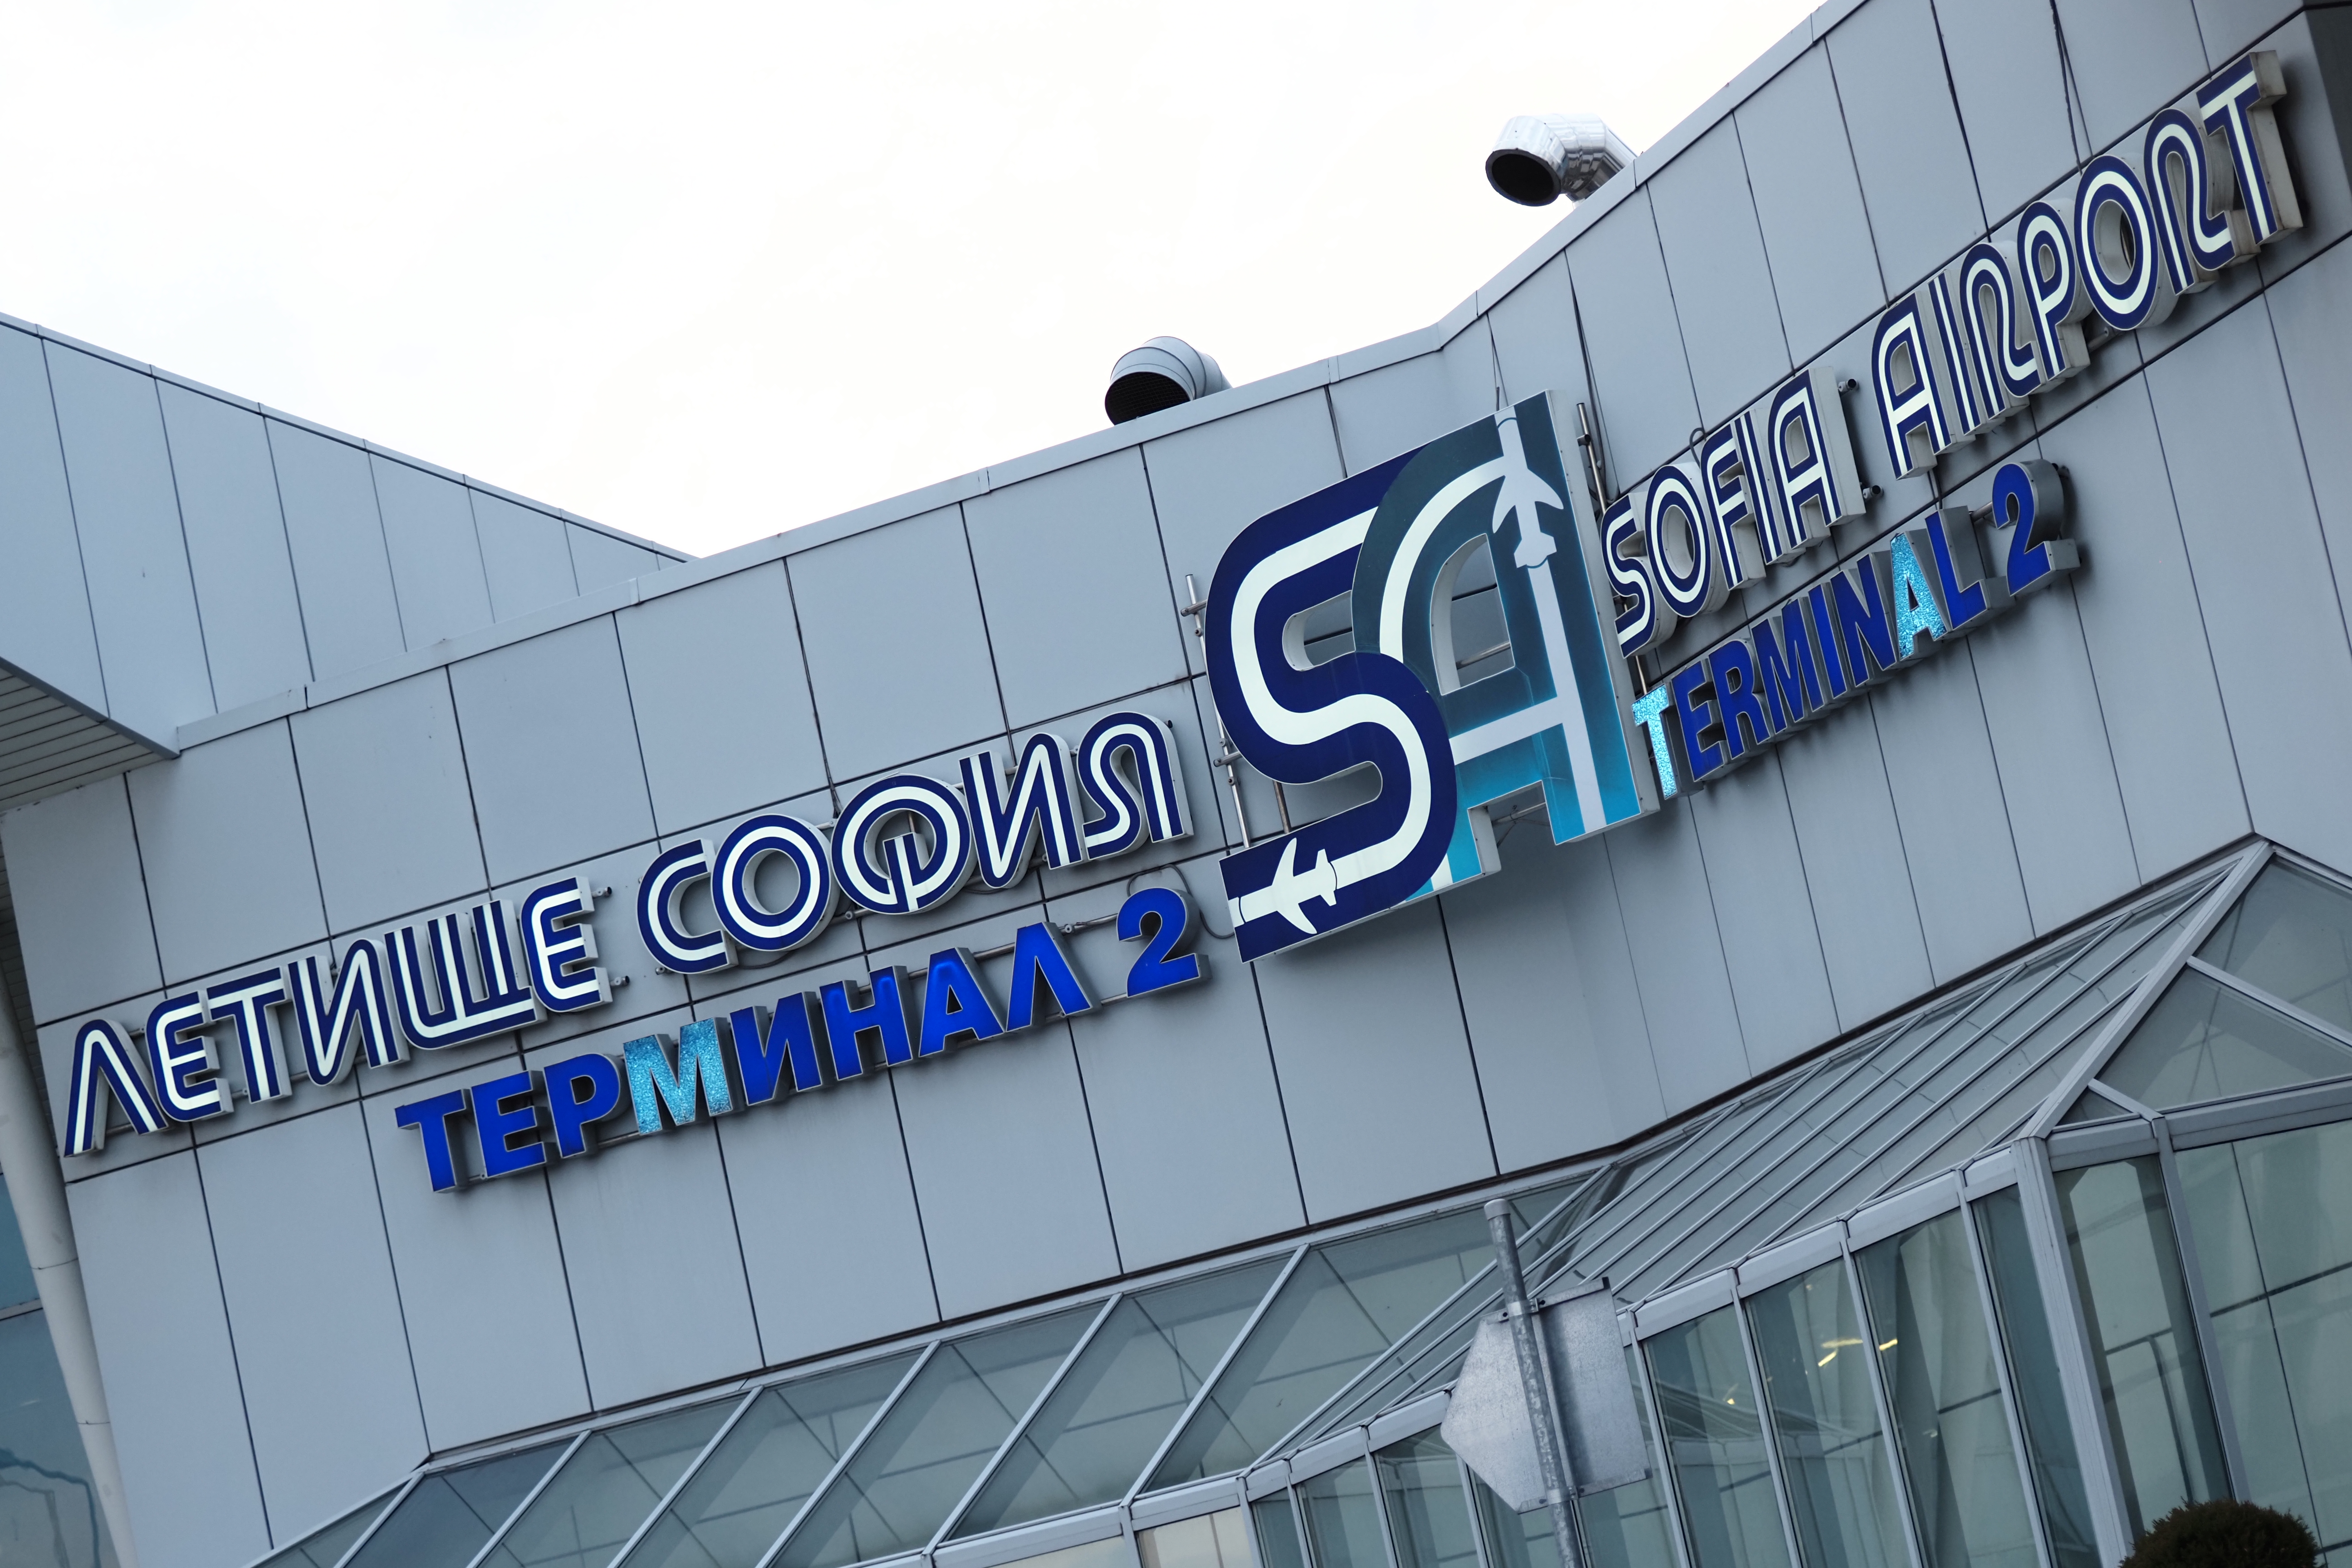 Министерският съвет реши цялата територия на летище София, включена в